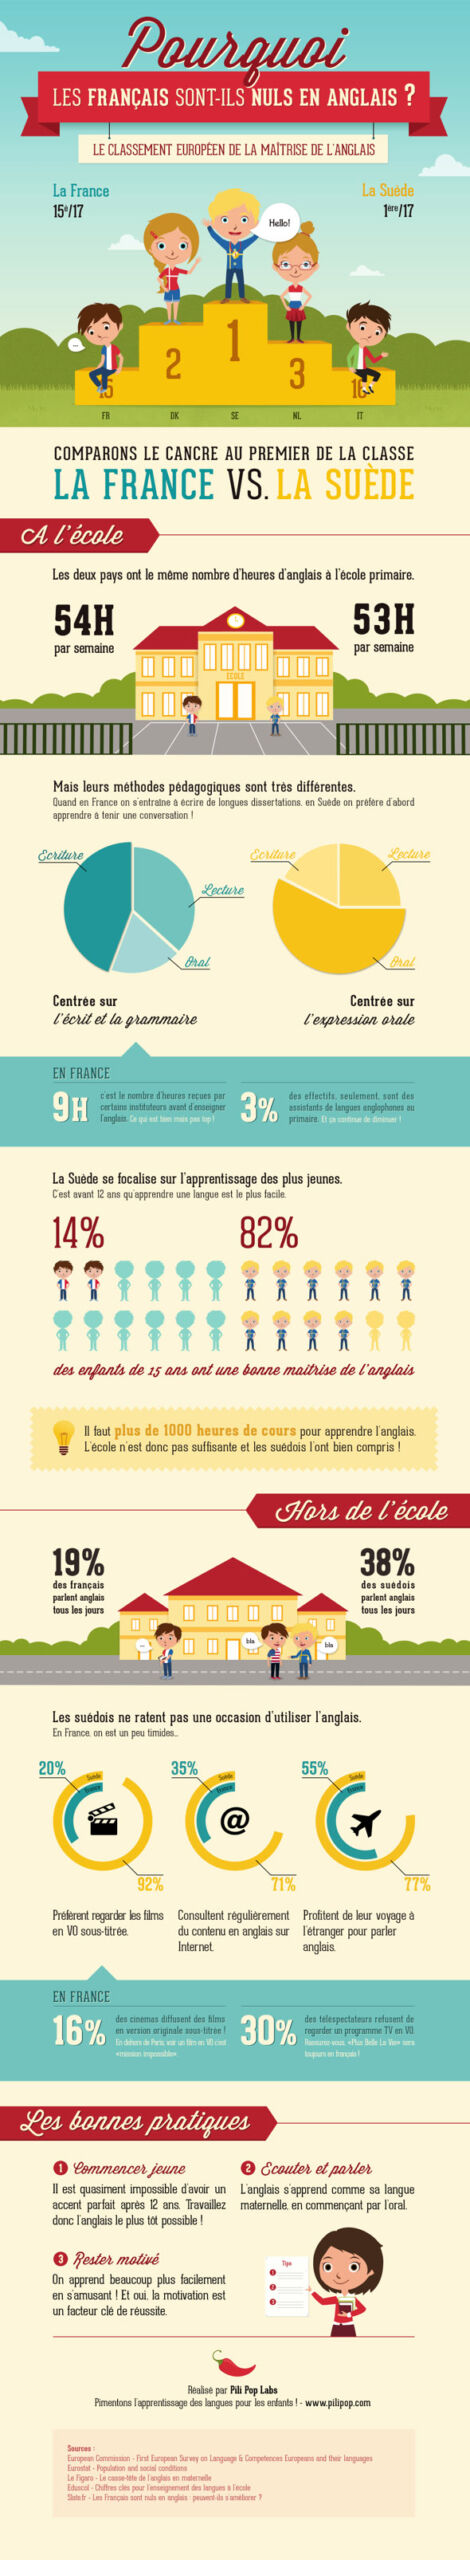 Infographie : Pourquoi les français sont-ils nuls en anglais ?